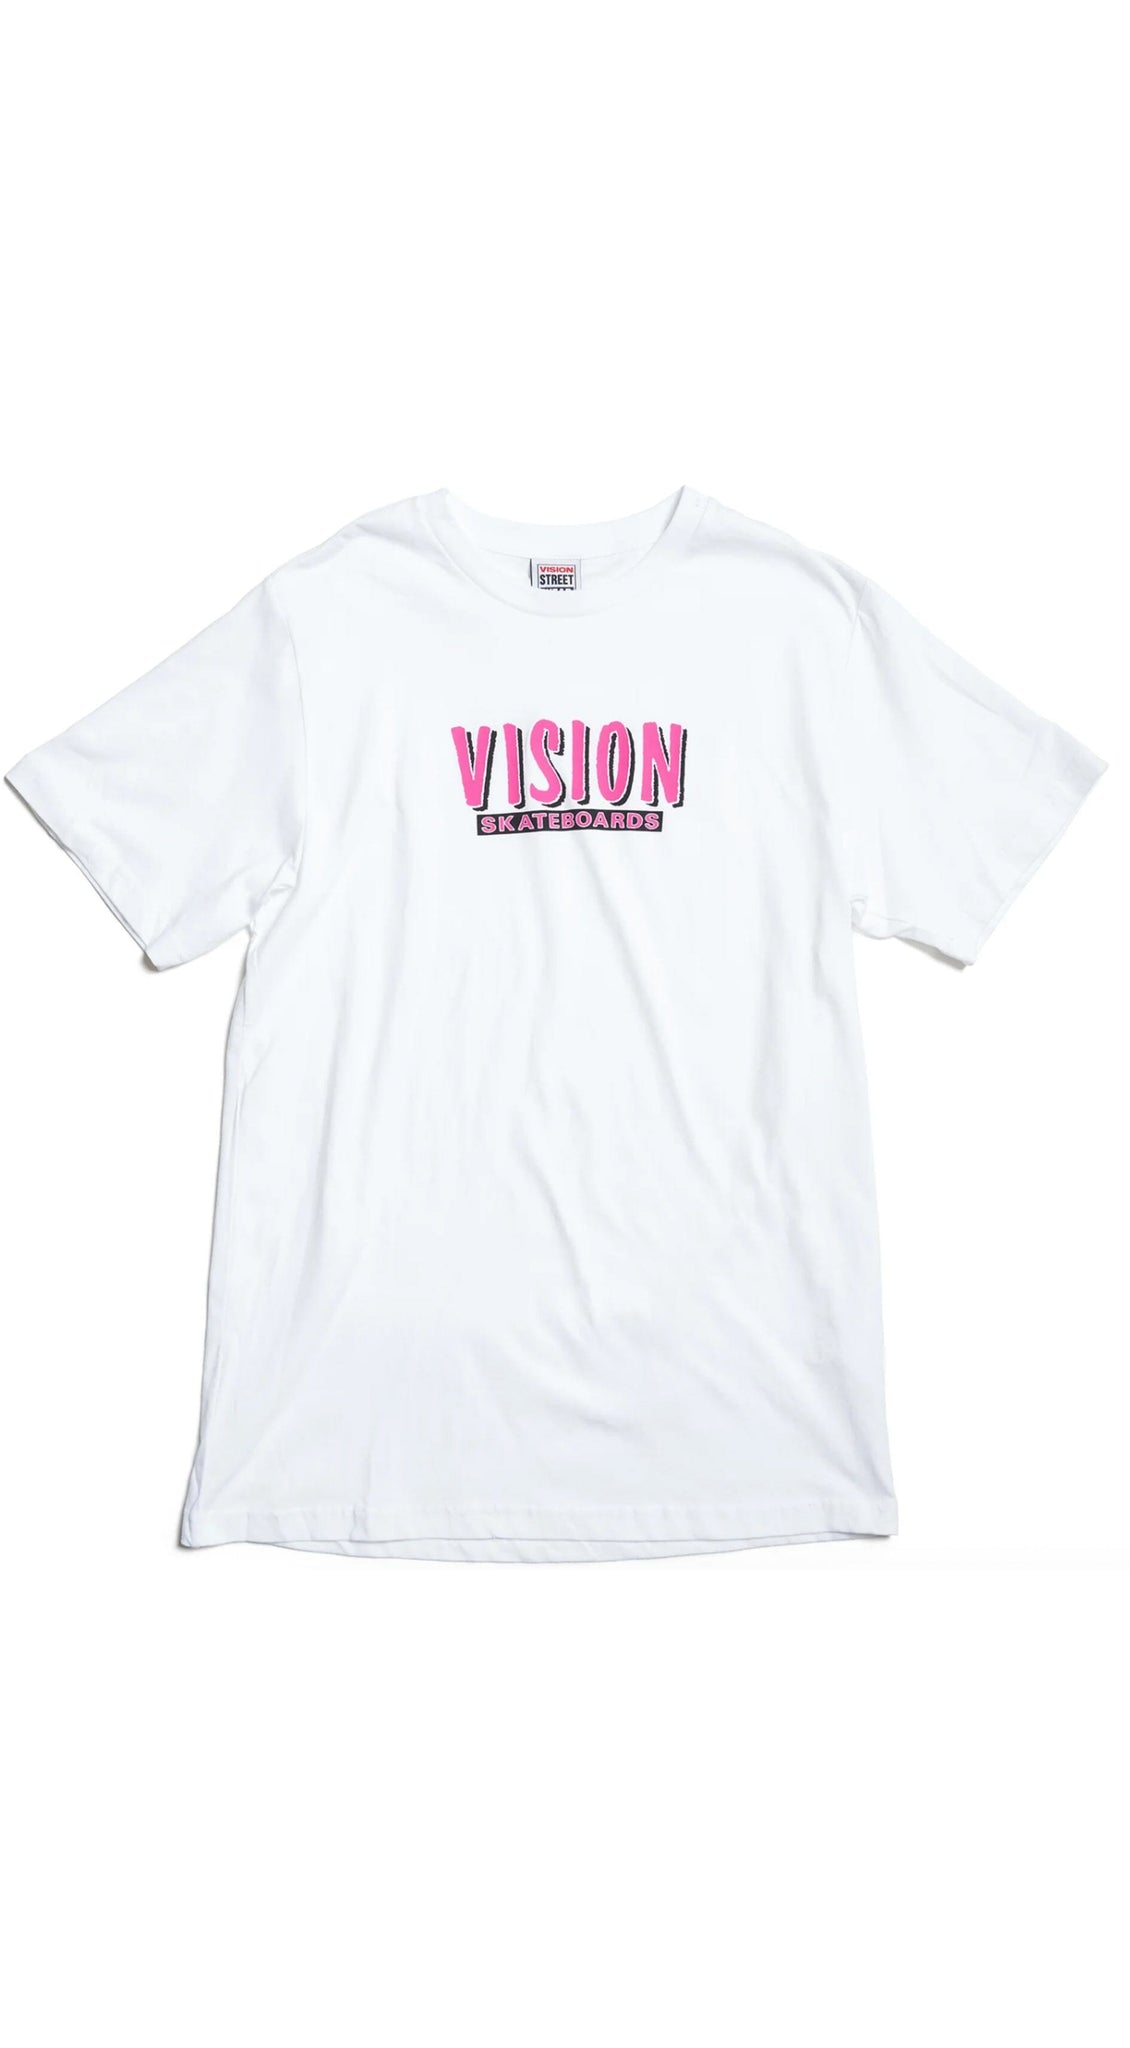 Vision Street Wear Skateboards S/S White T-shirt - Camiseta Ropa Vision Skateboards 